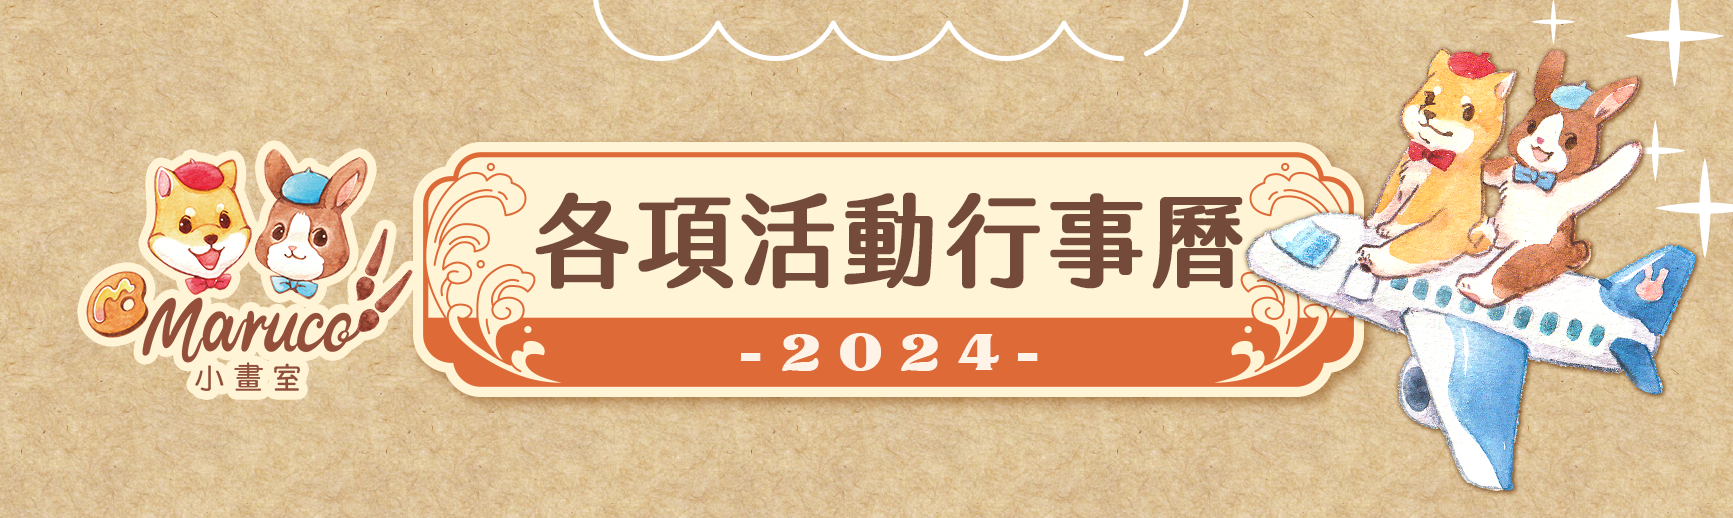 2024各項活動行事曆-01